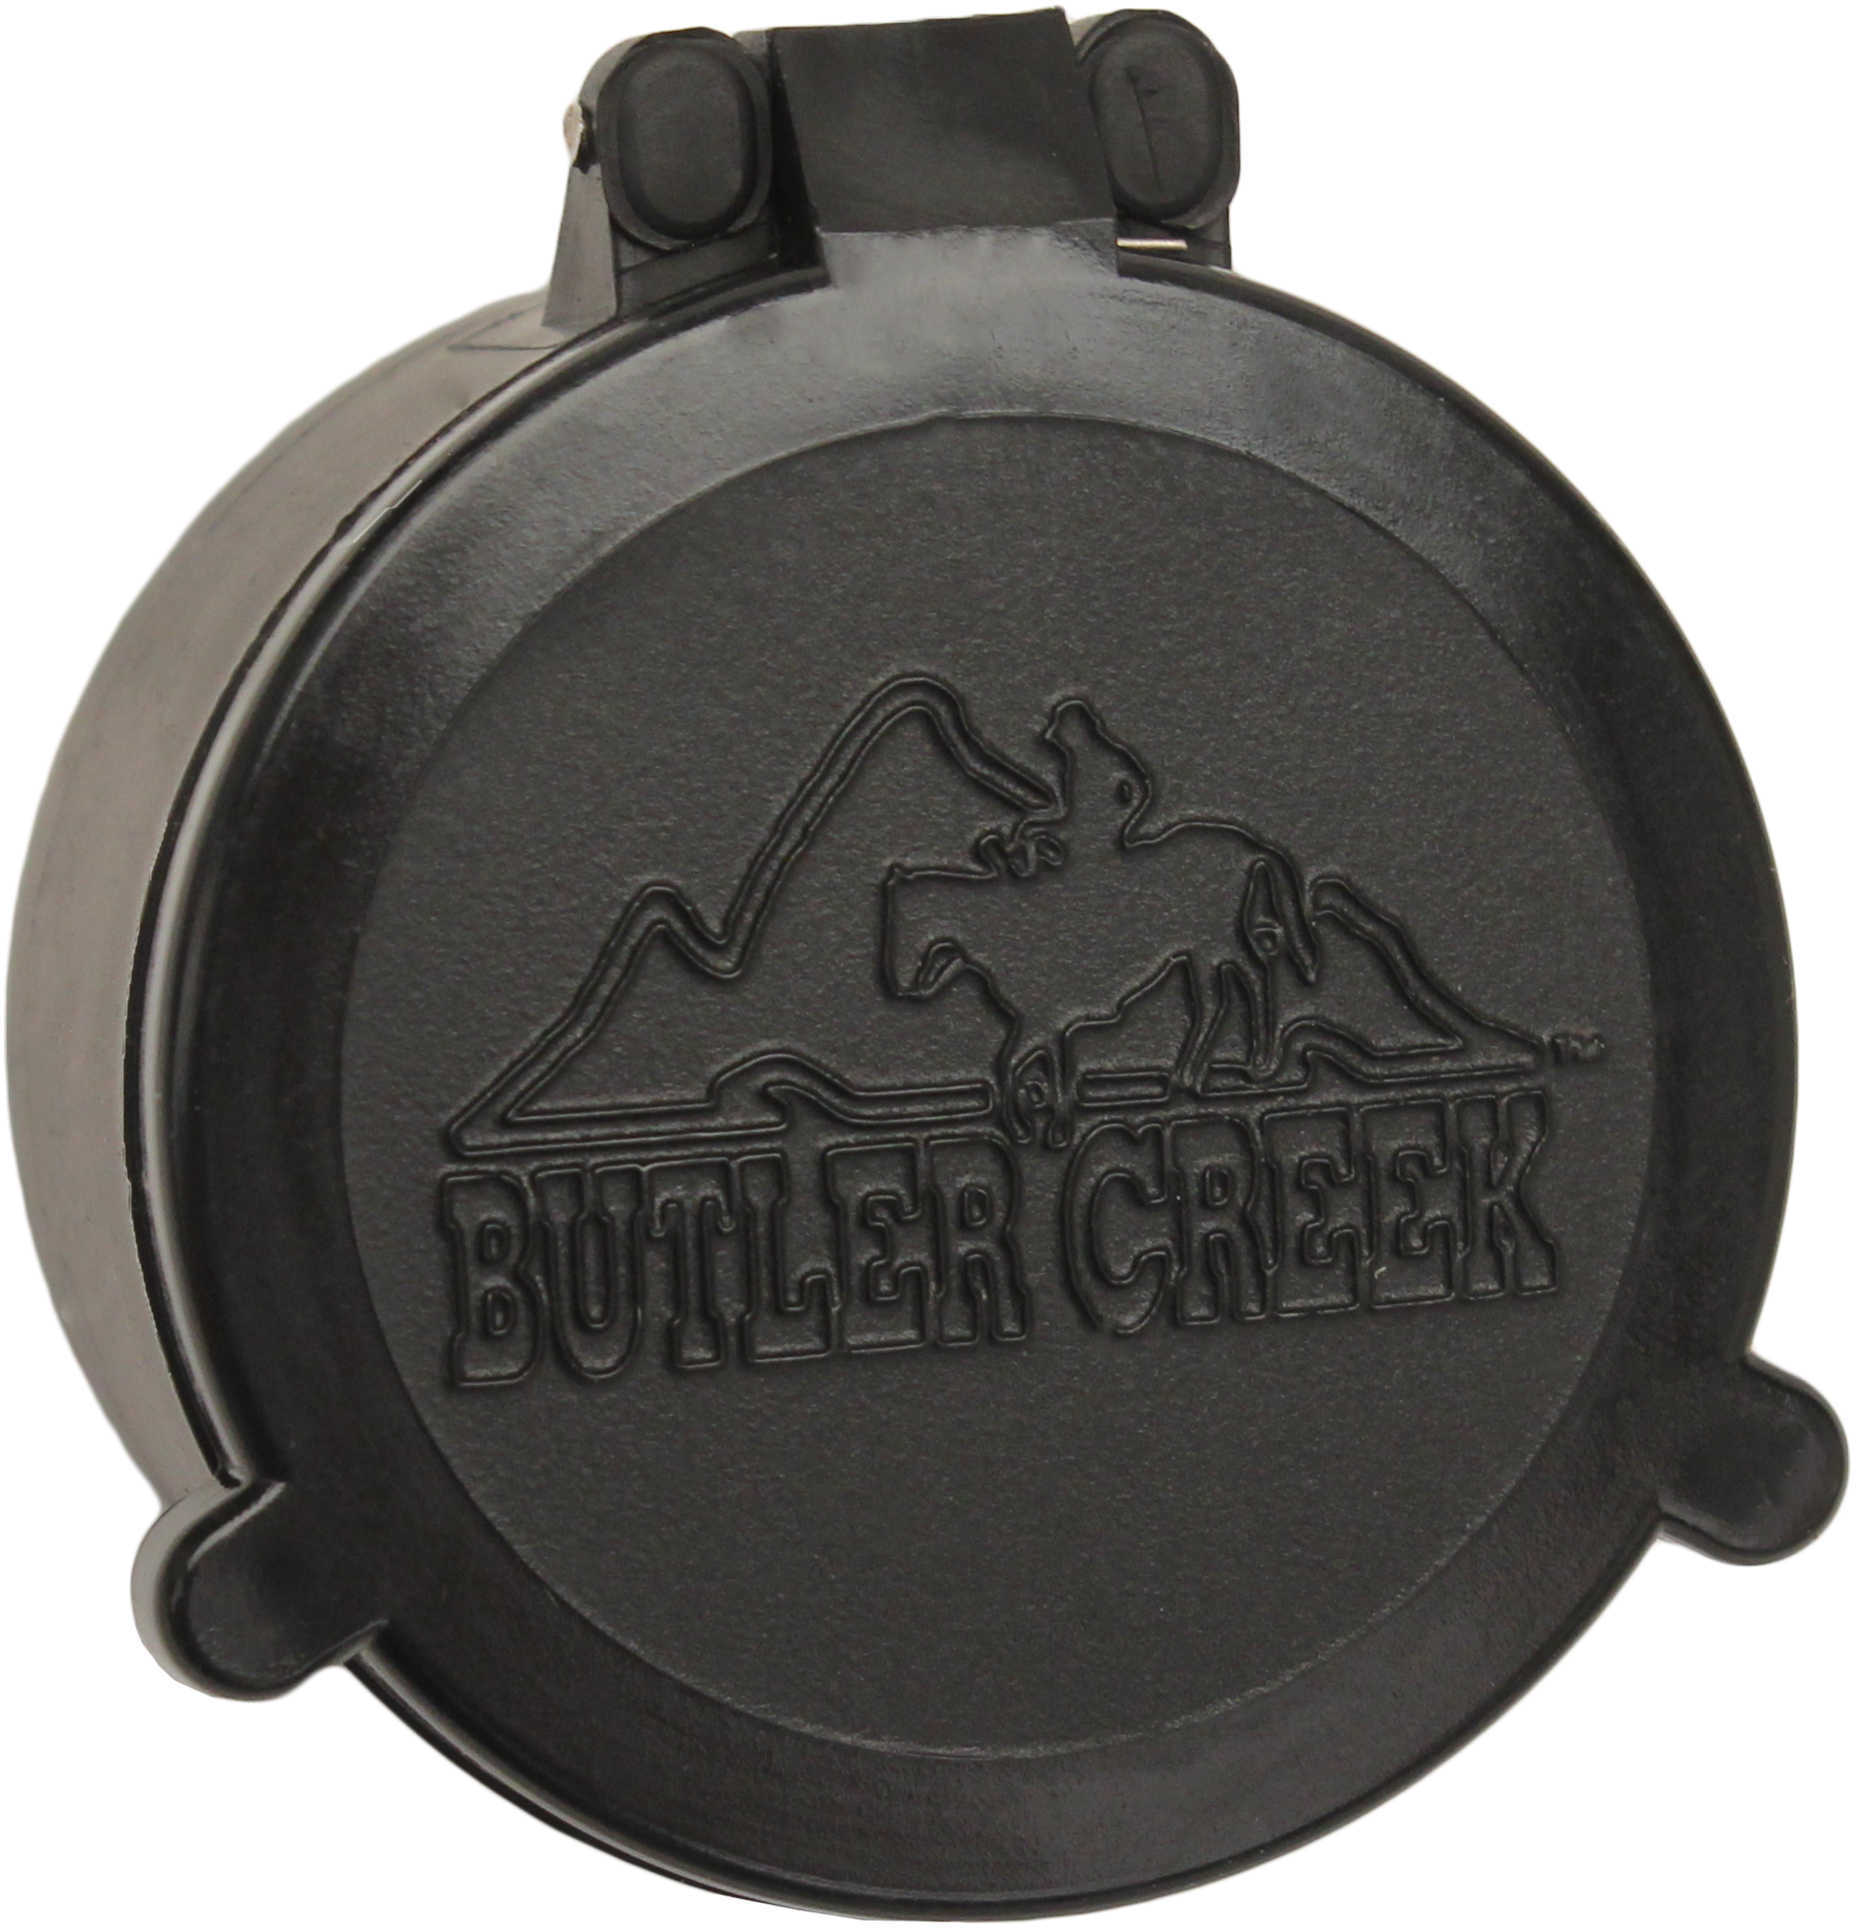 Butler Creek 30230 Flip-Open Scope Cover Objective Lens 44.70mm Slip On Polymer Black